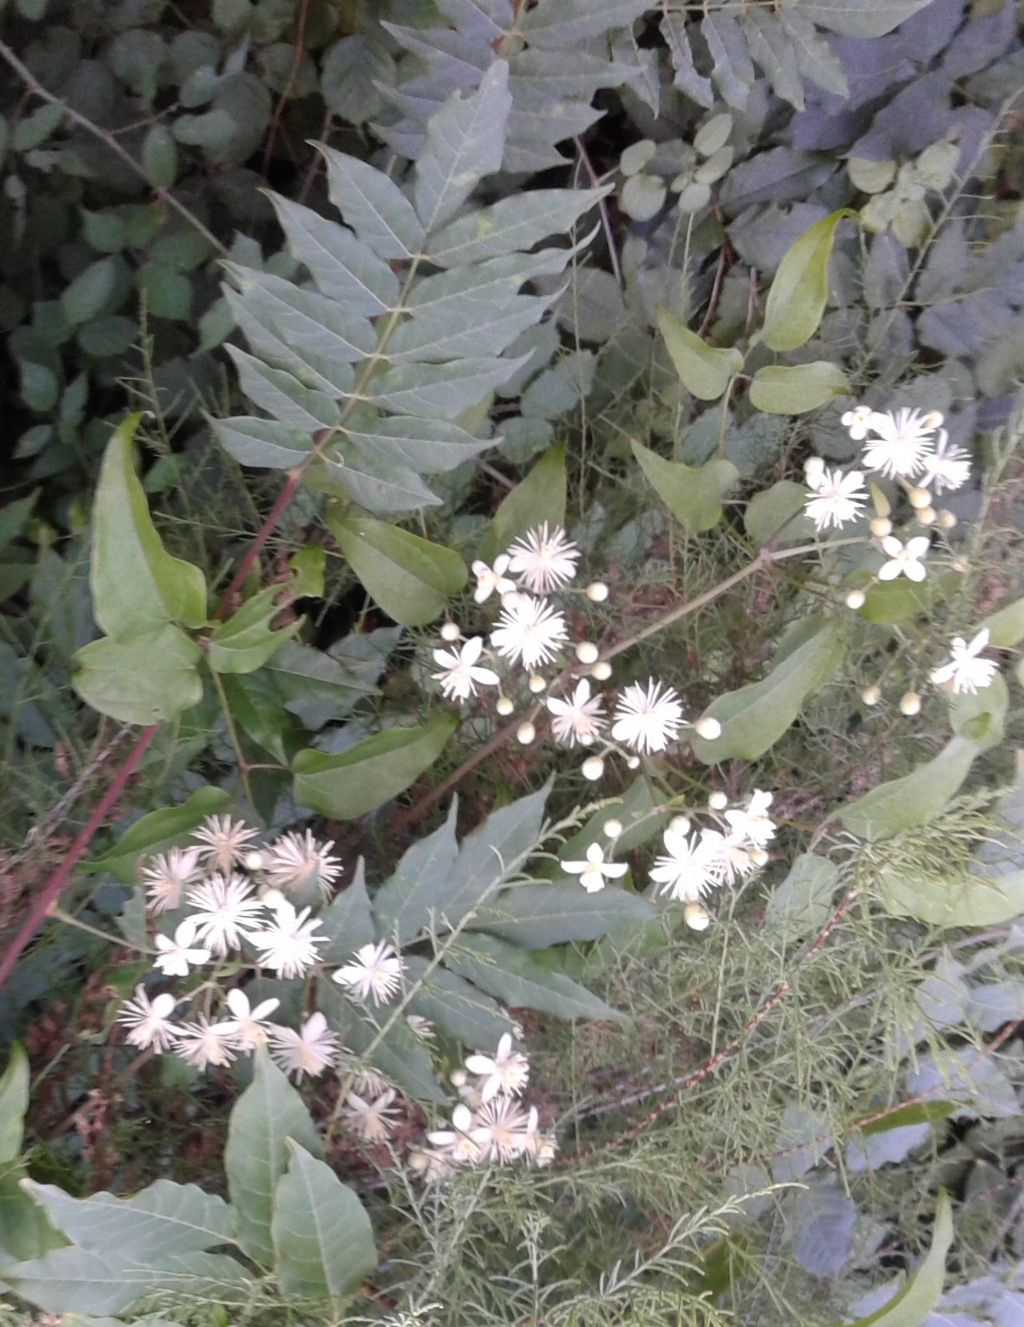 Fiori bianchi nella selva: Clematis sp.